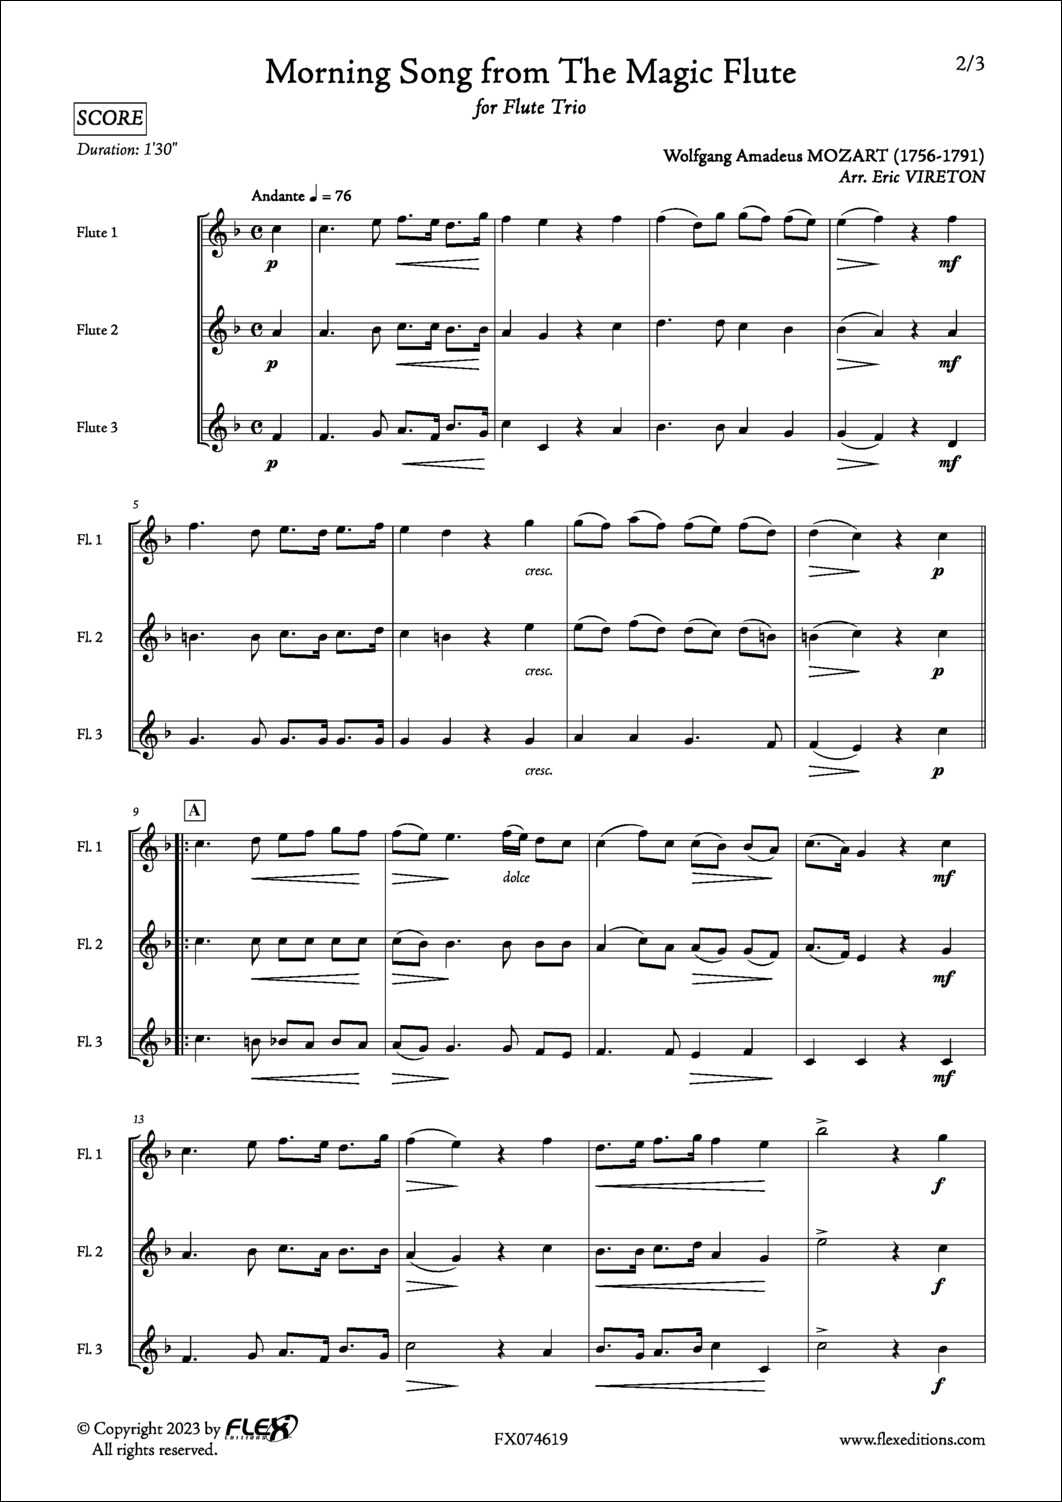 Chanson du Matin extrait de La Flûte Enchantée - W. A. MOZART - <font color=#666666>Trio de Flûtes</font>